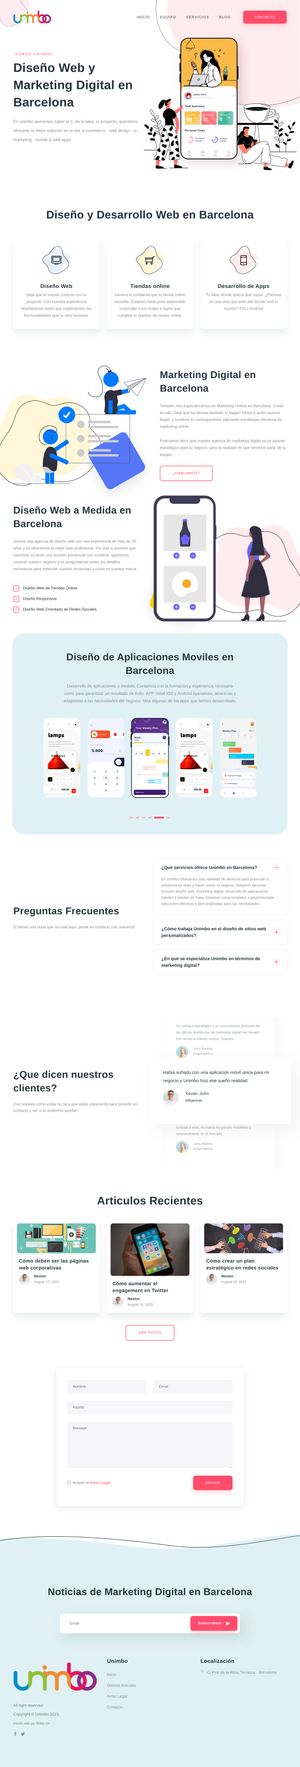 Ejemplo de diseño web completo en Leganés: Muestra la página web profesional que ha diseñado Ridaly para unimbo